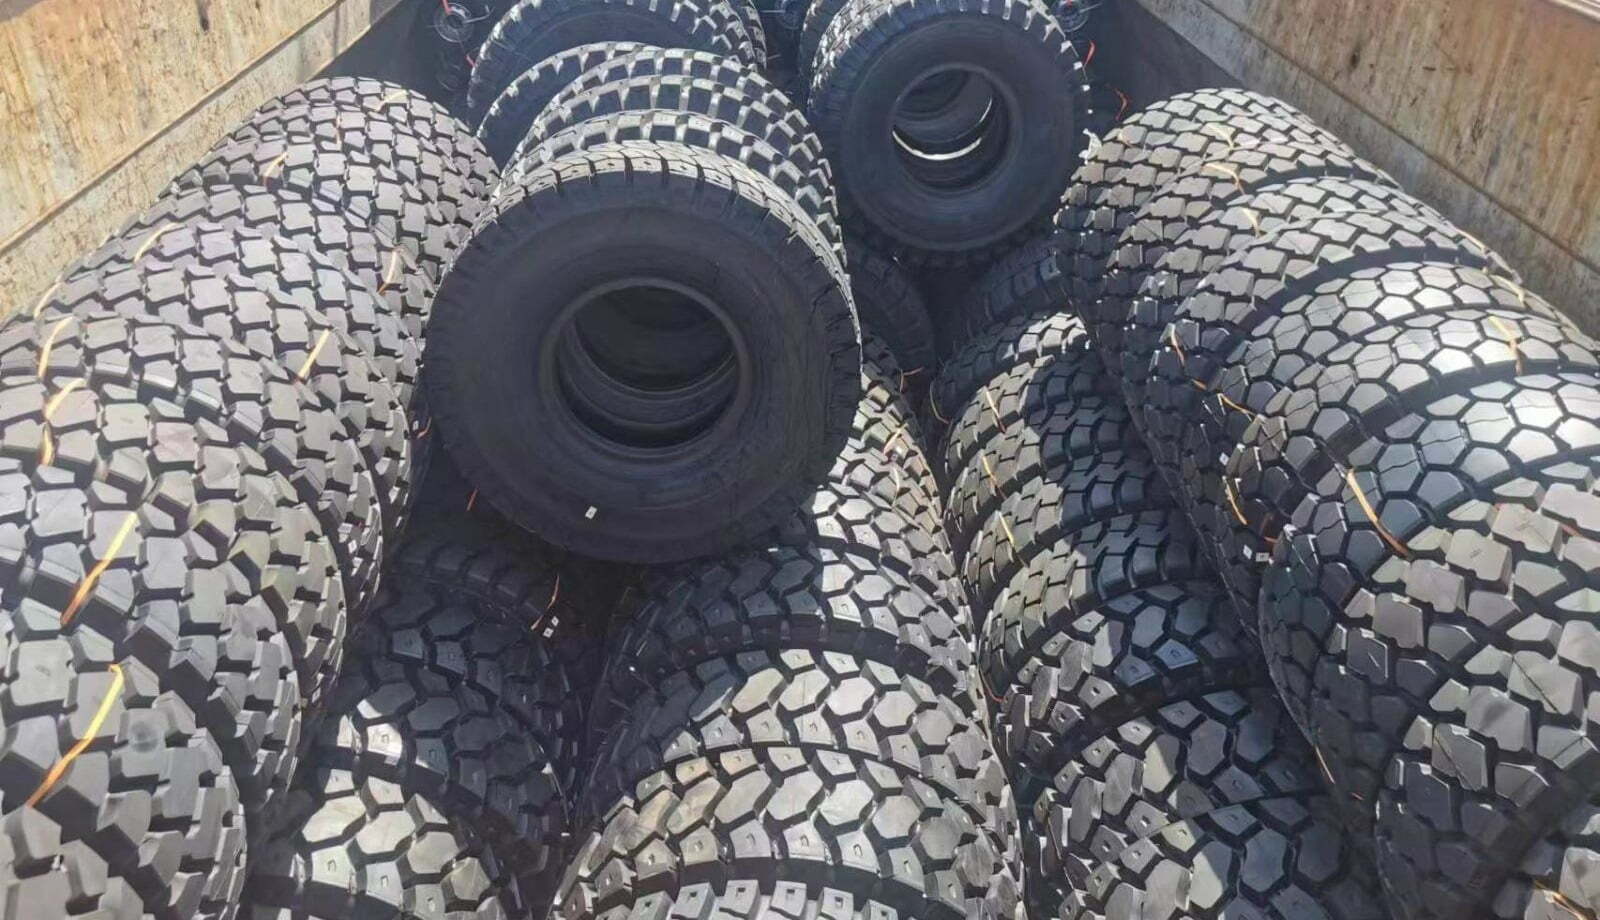 bulkship of tires